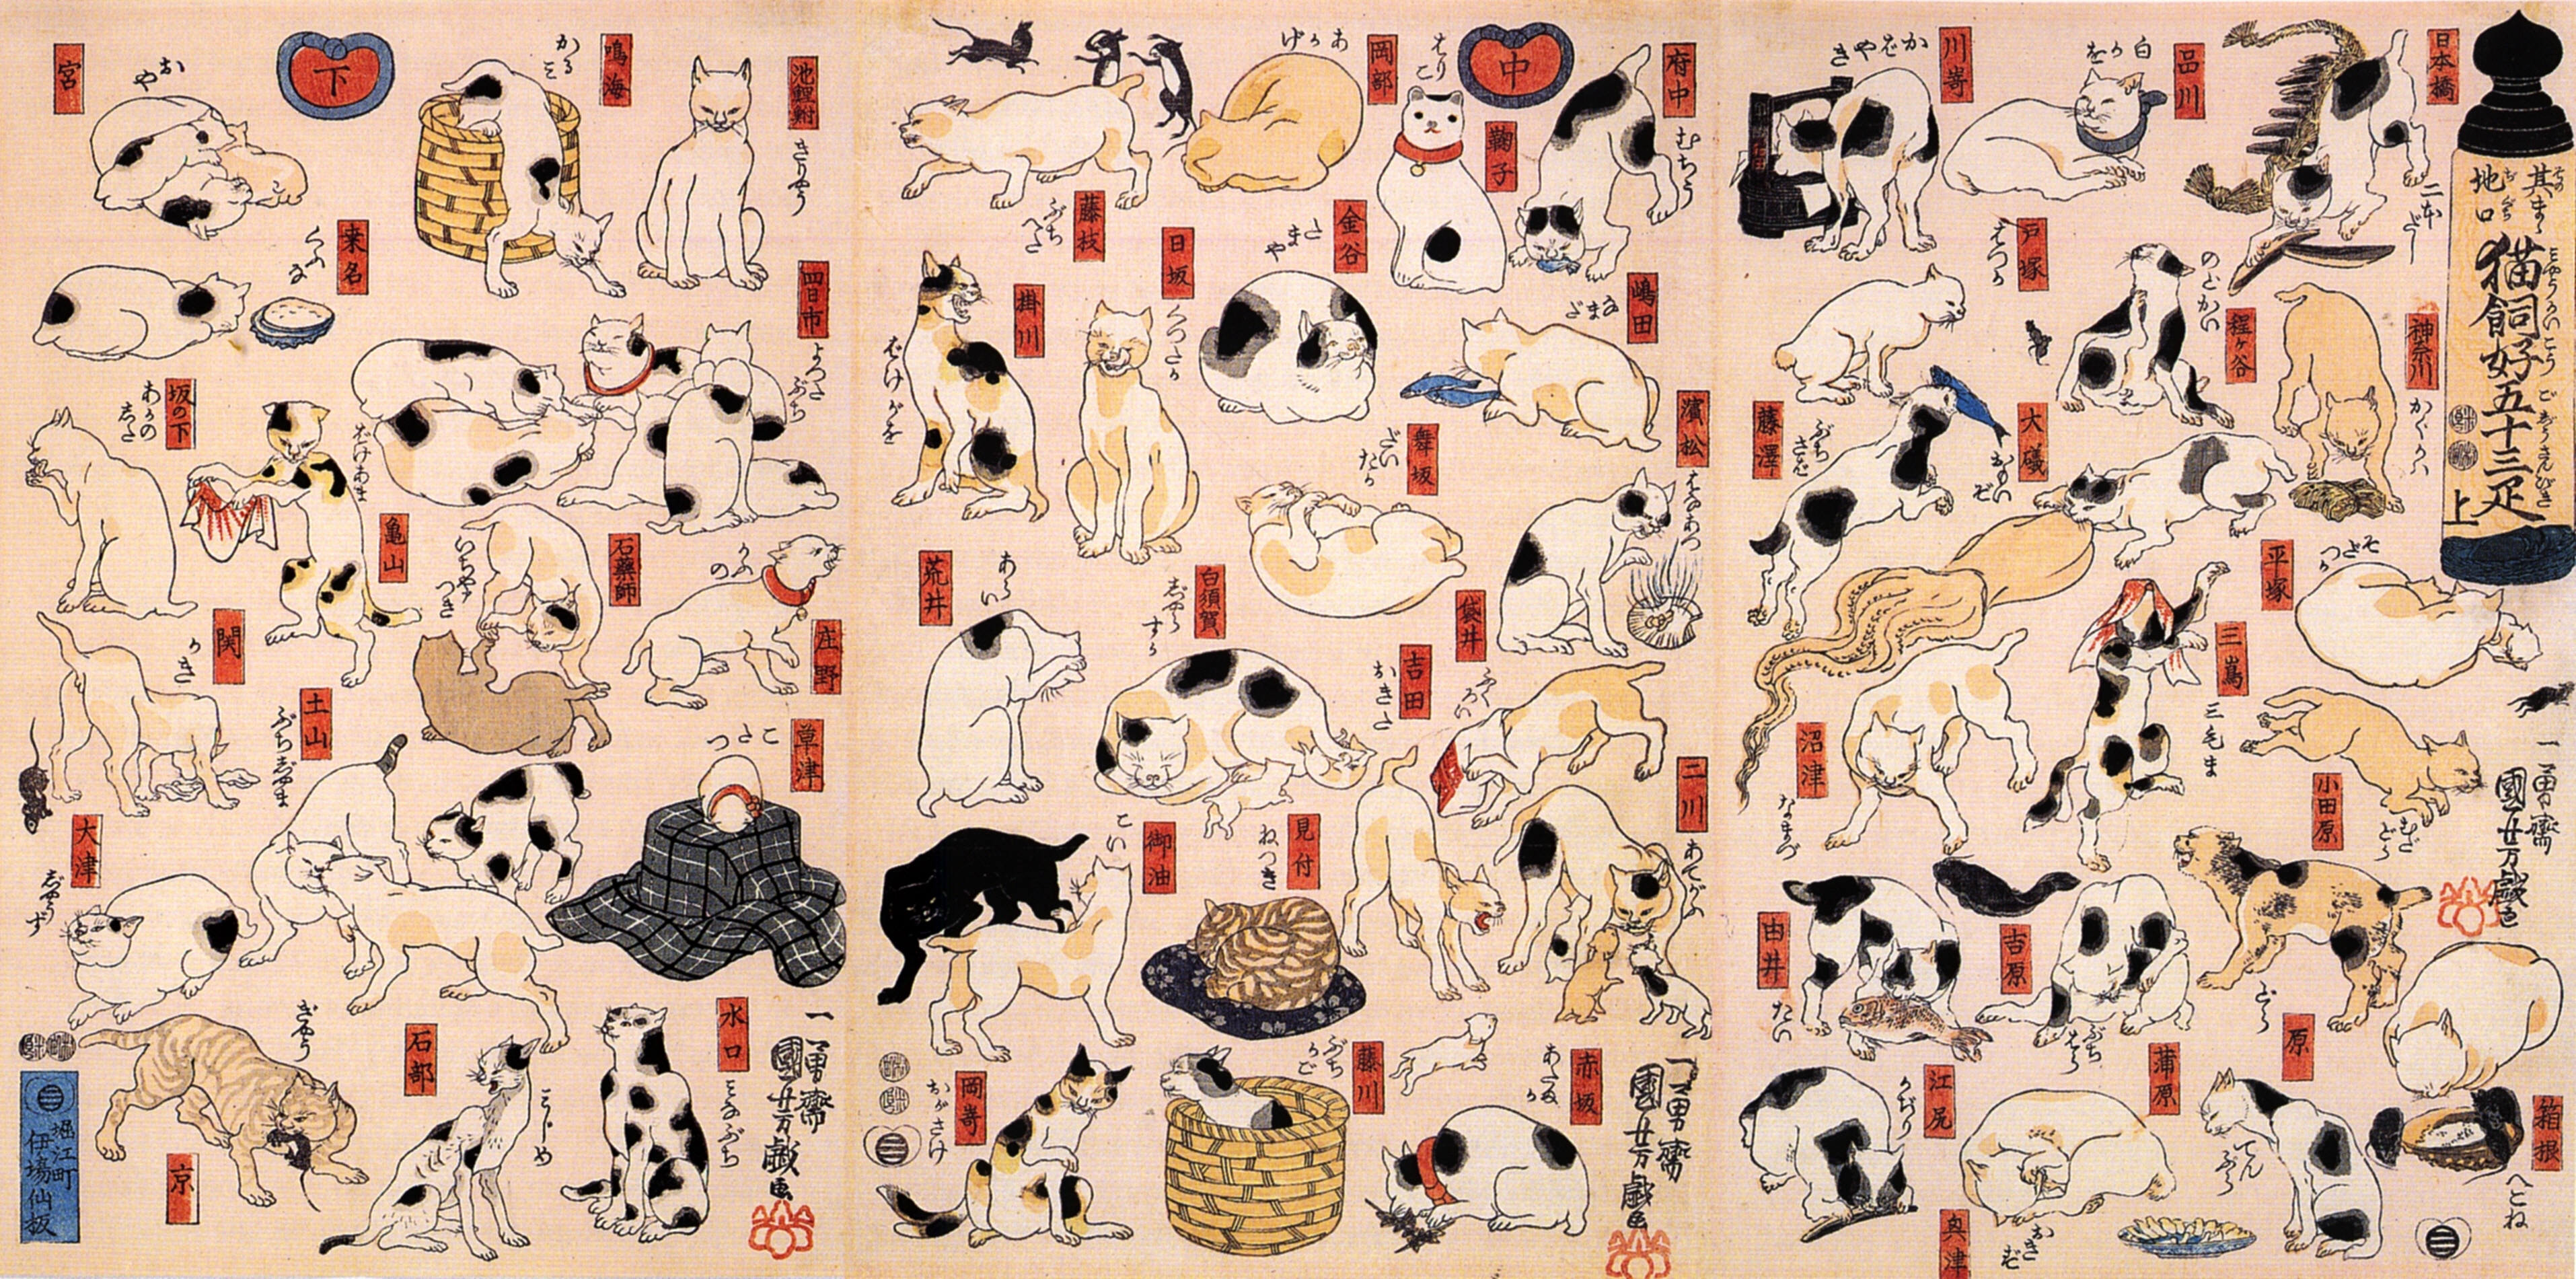 貓。來自東海道的53個驛站 by Utagawa Kuniyoshi - 1848年 